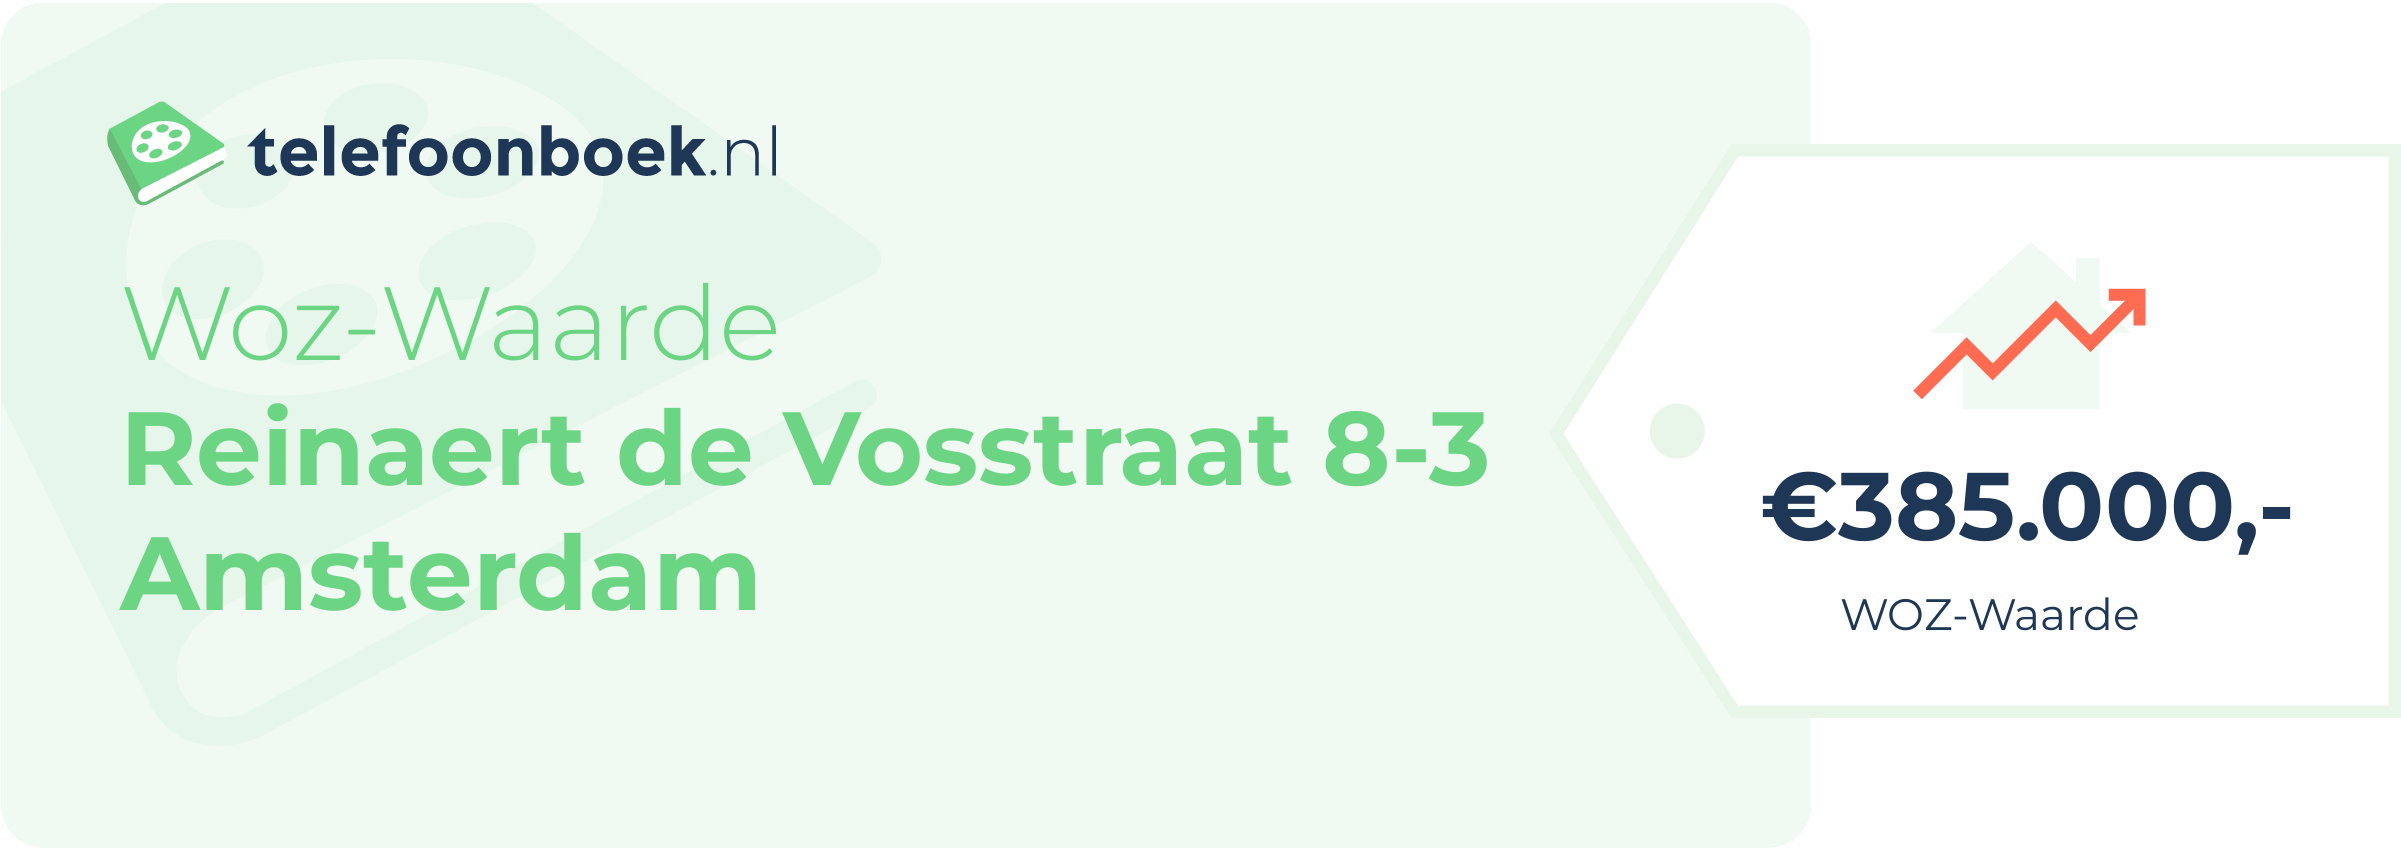 WOZ-waarde Reinaert De Vosstraat 8-3 Amsterdam